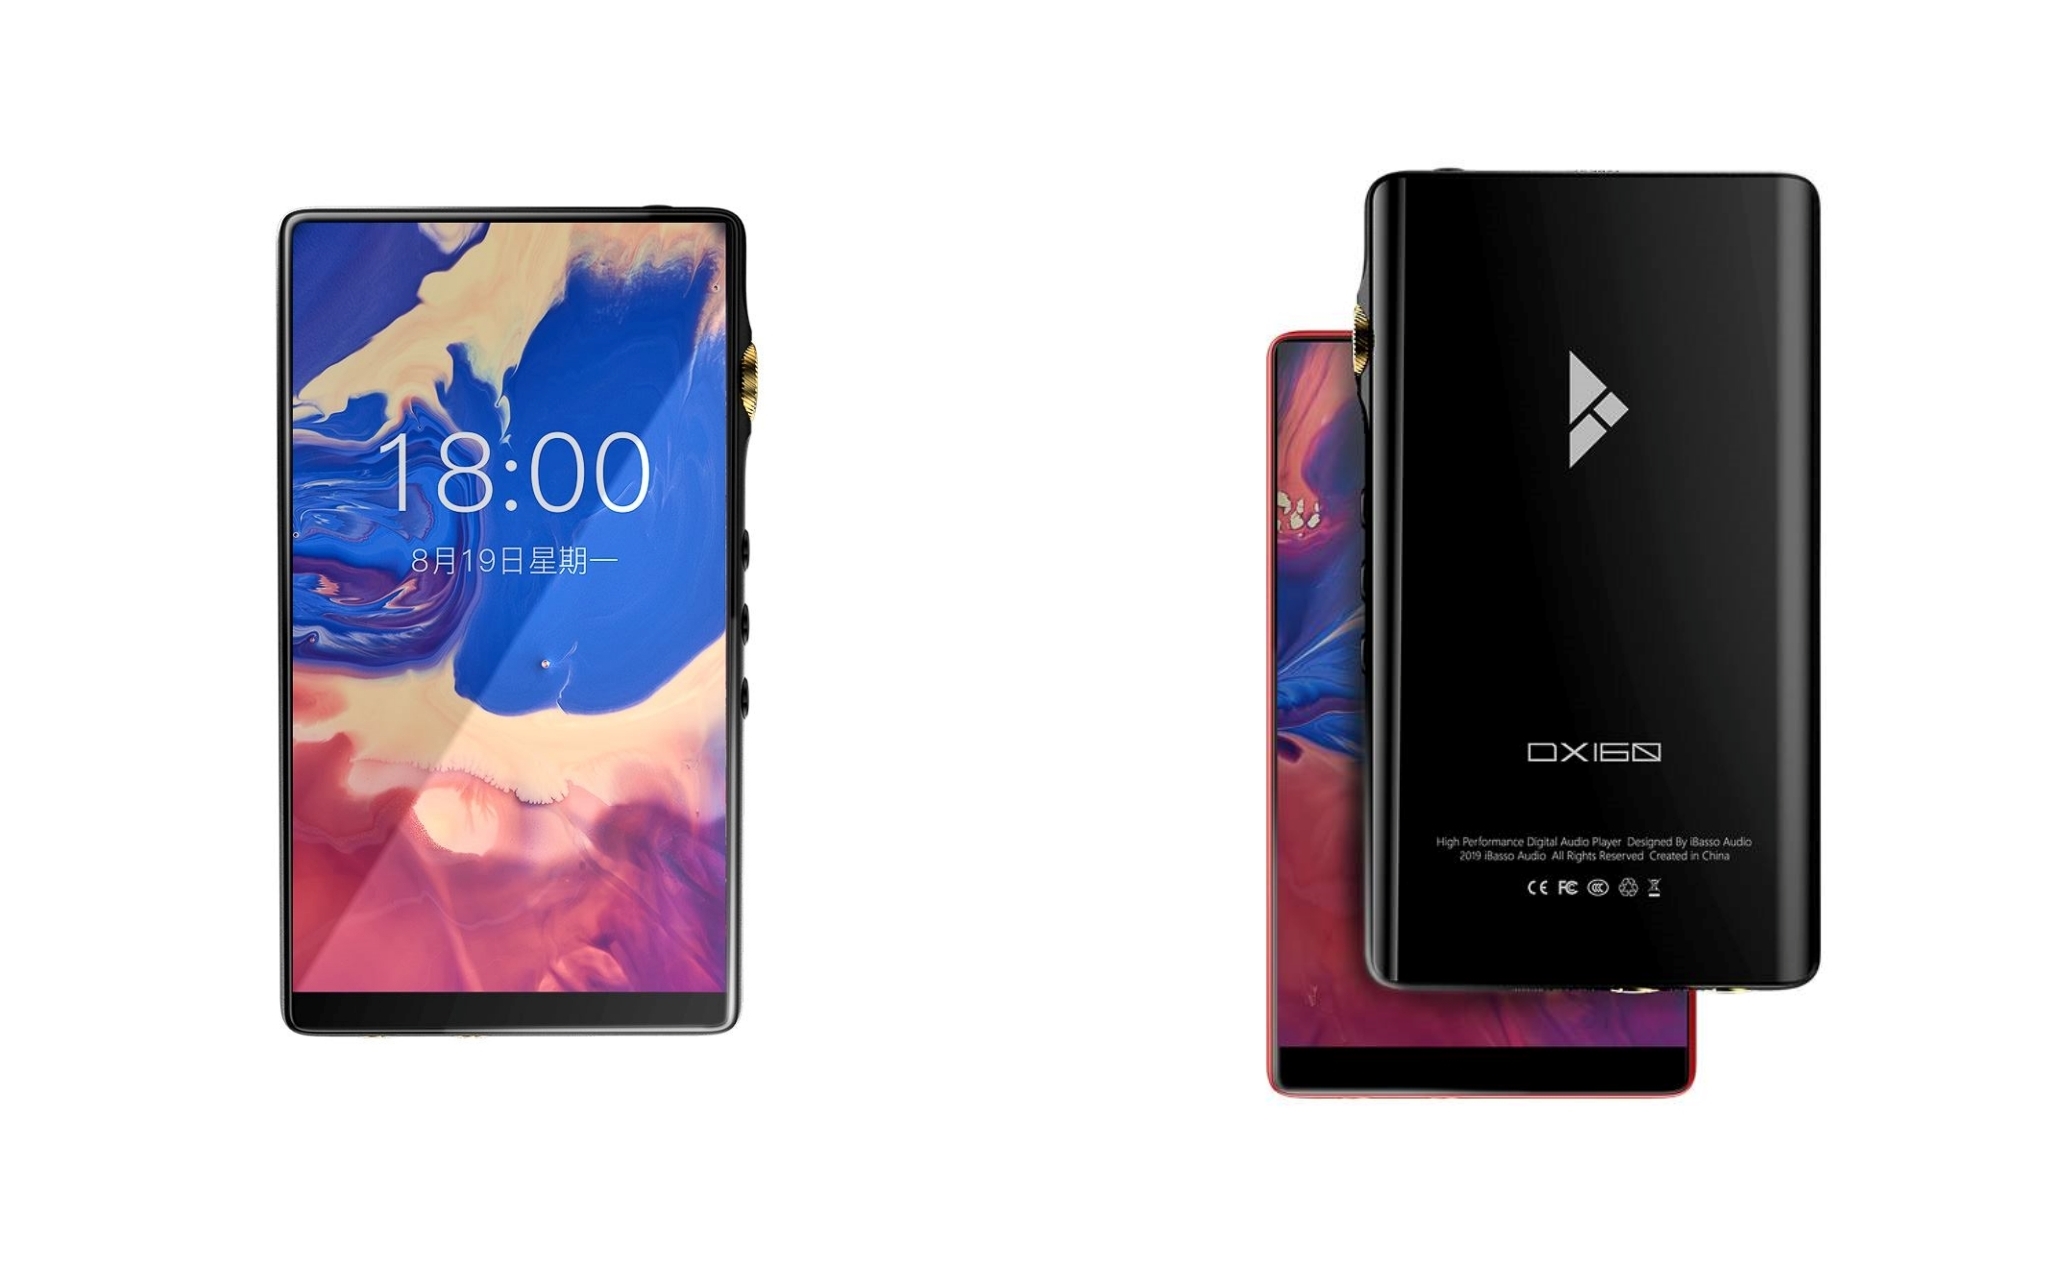 iBasso giới thiệu máy nghe nhạc cao cấp DX160, Dual DAC CS4398, giá 400 Đô